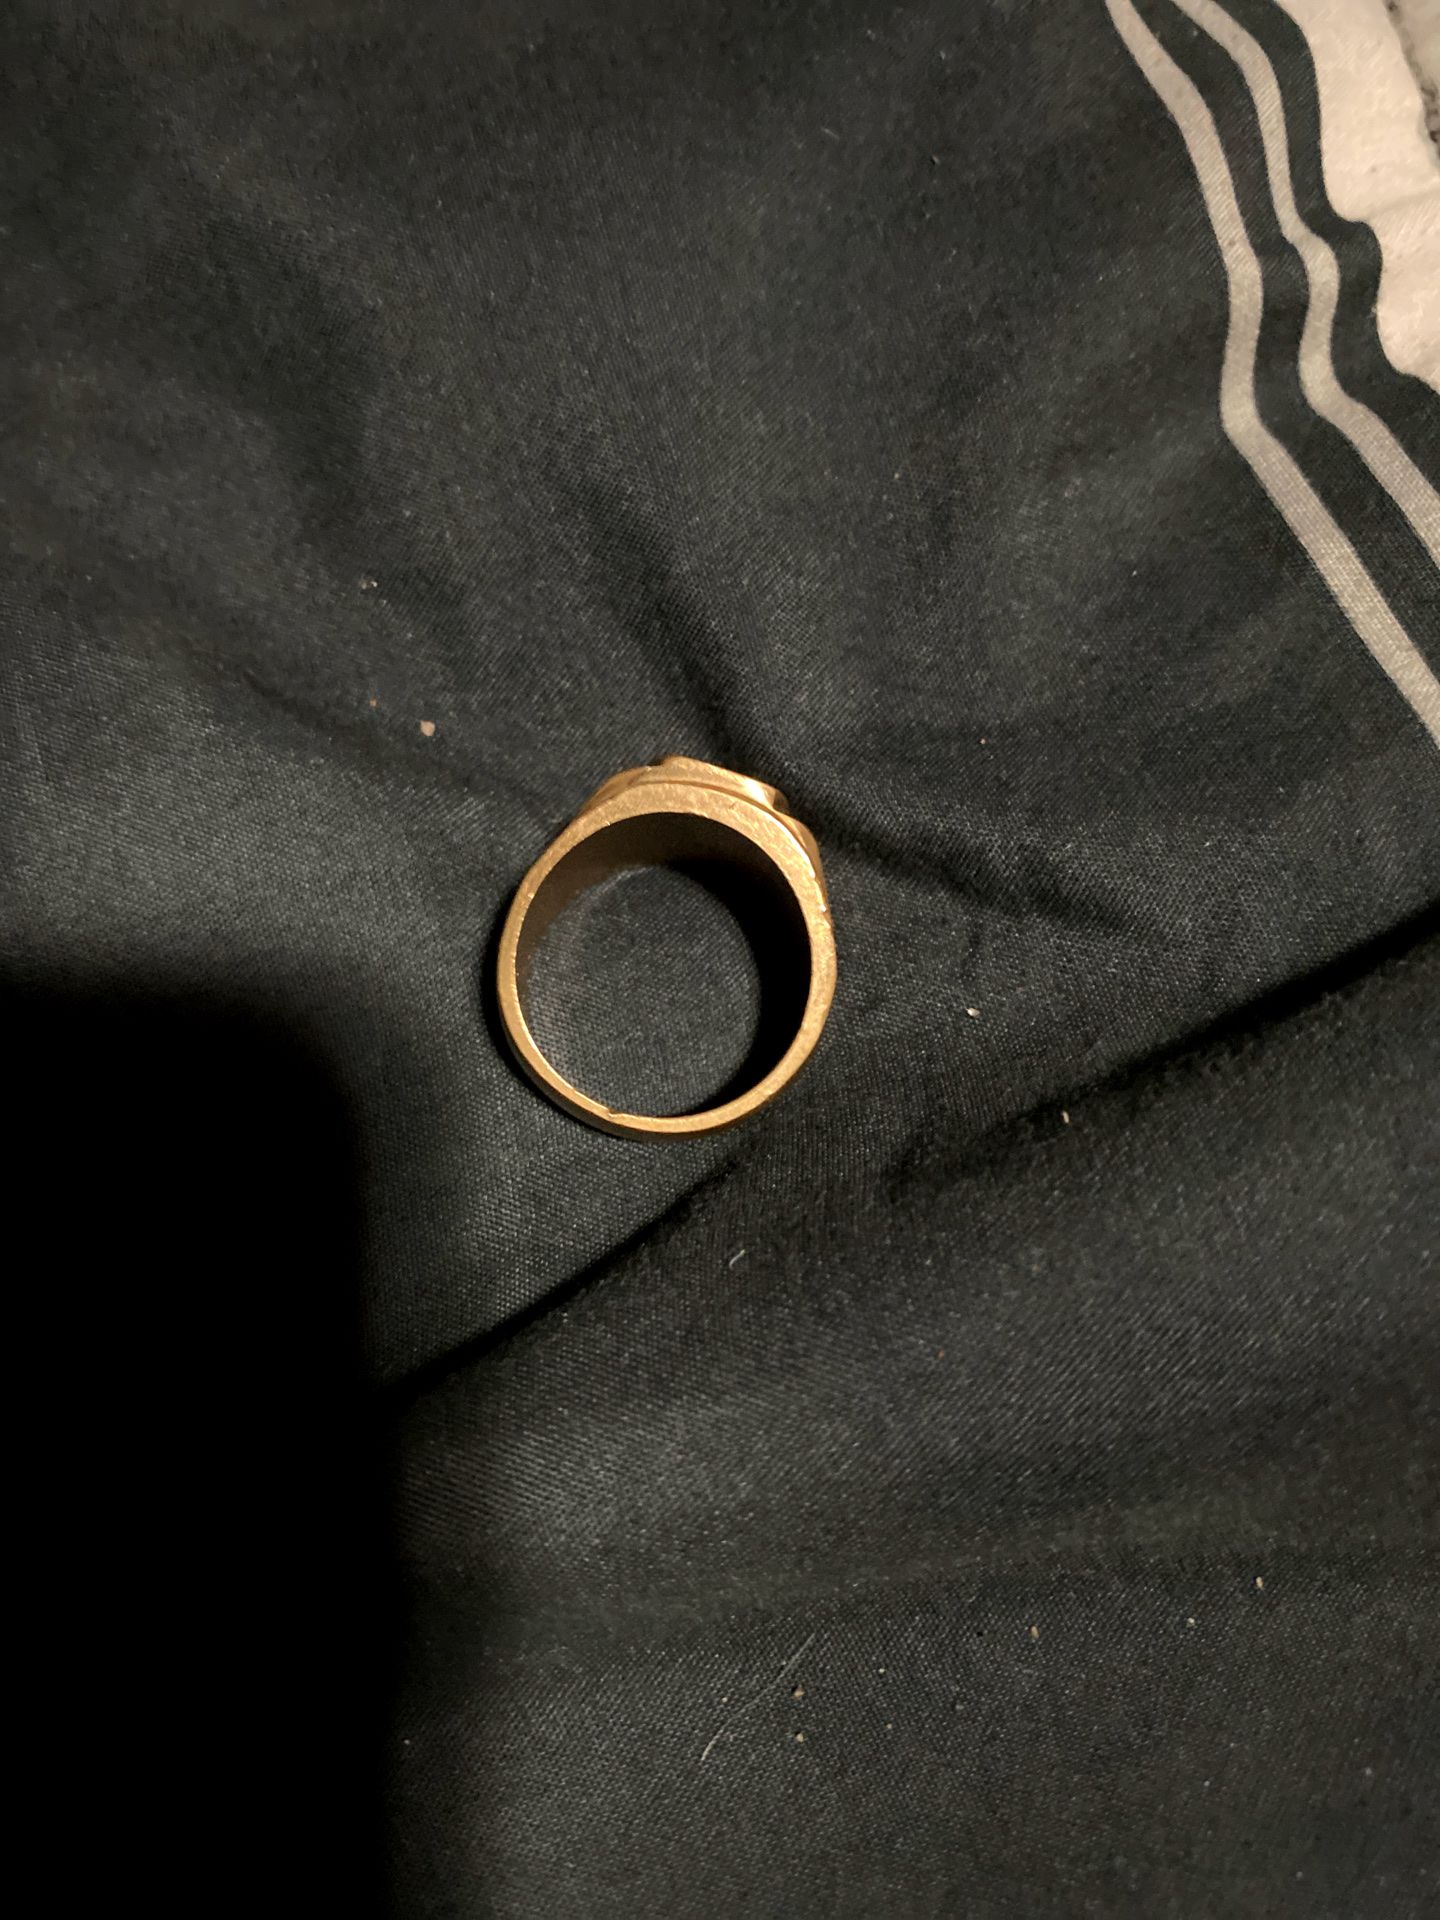 18k ring